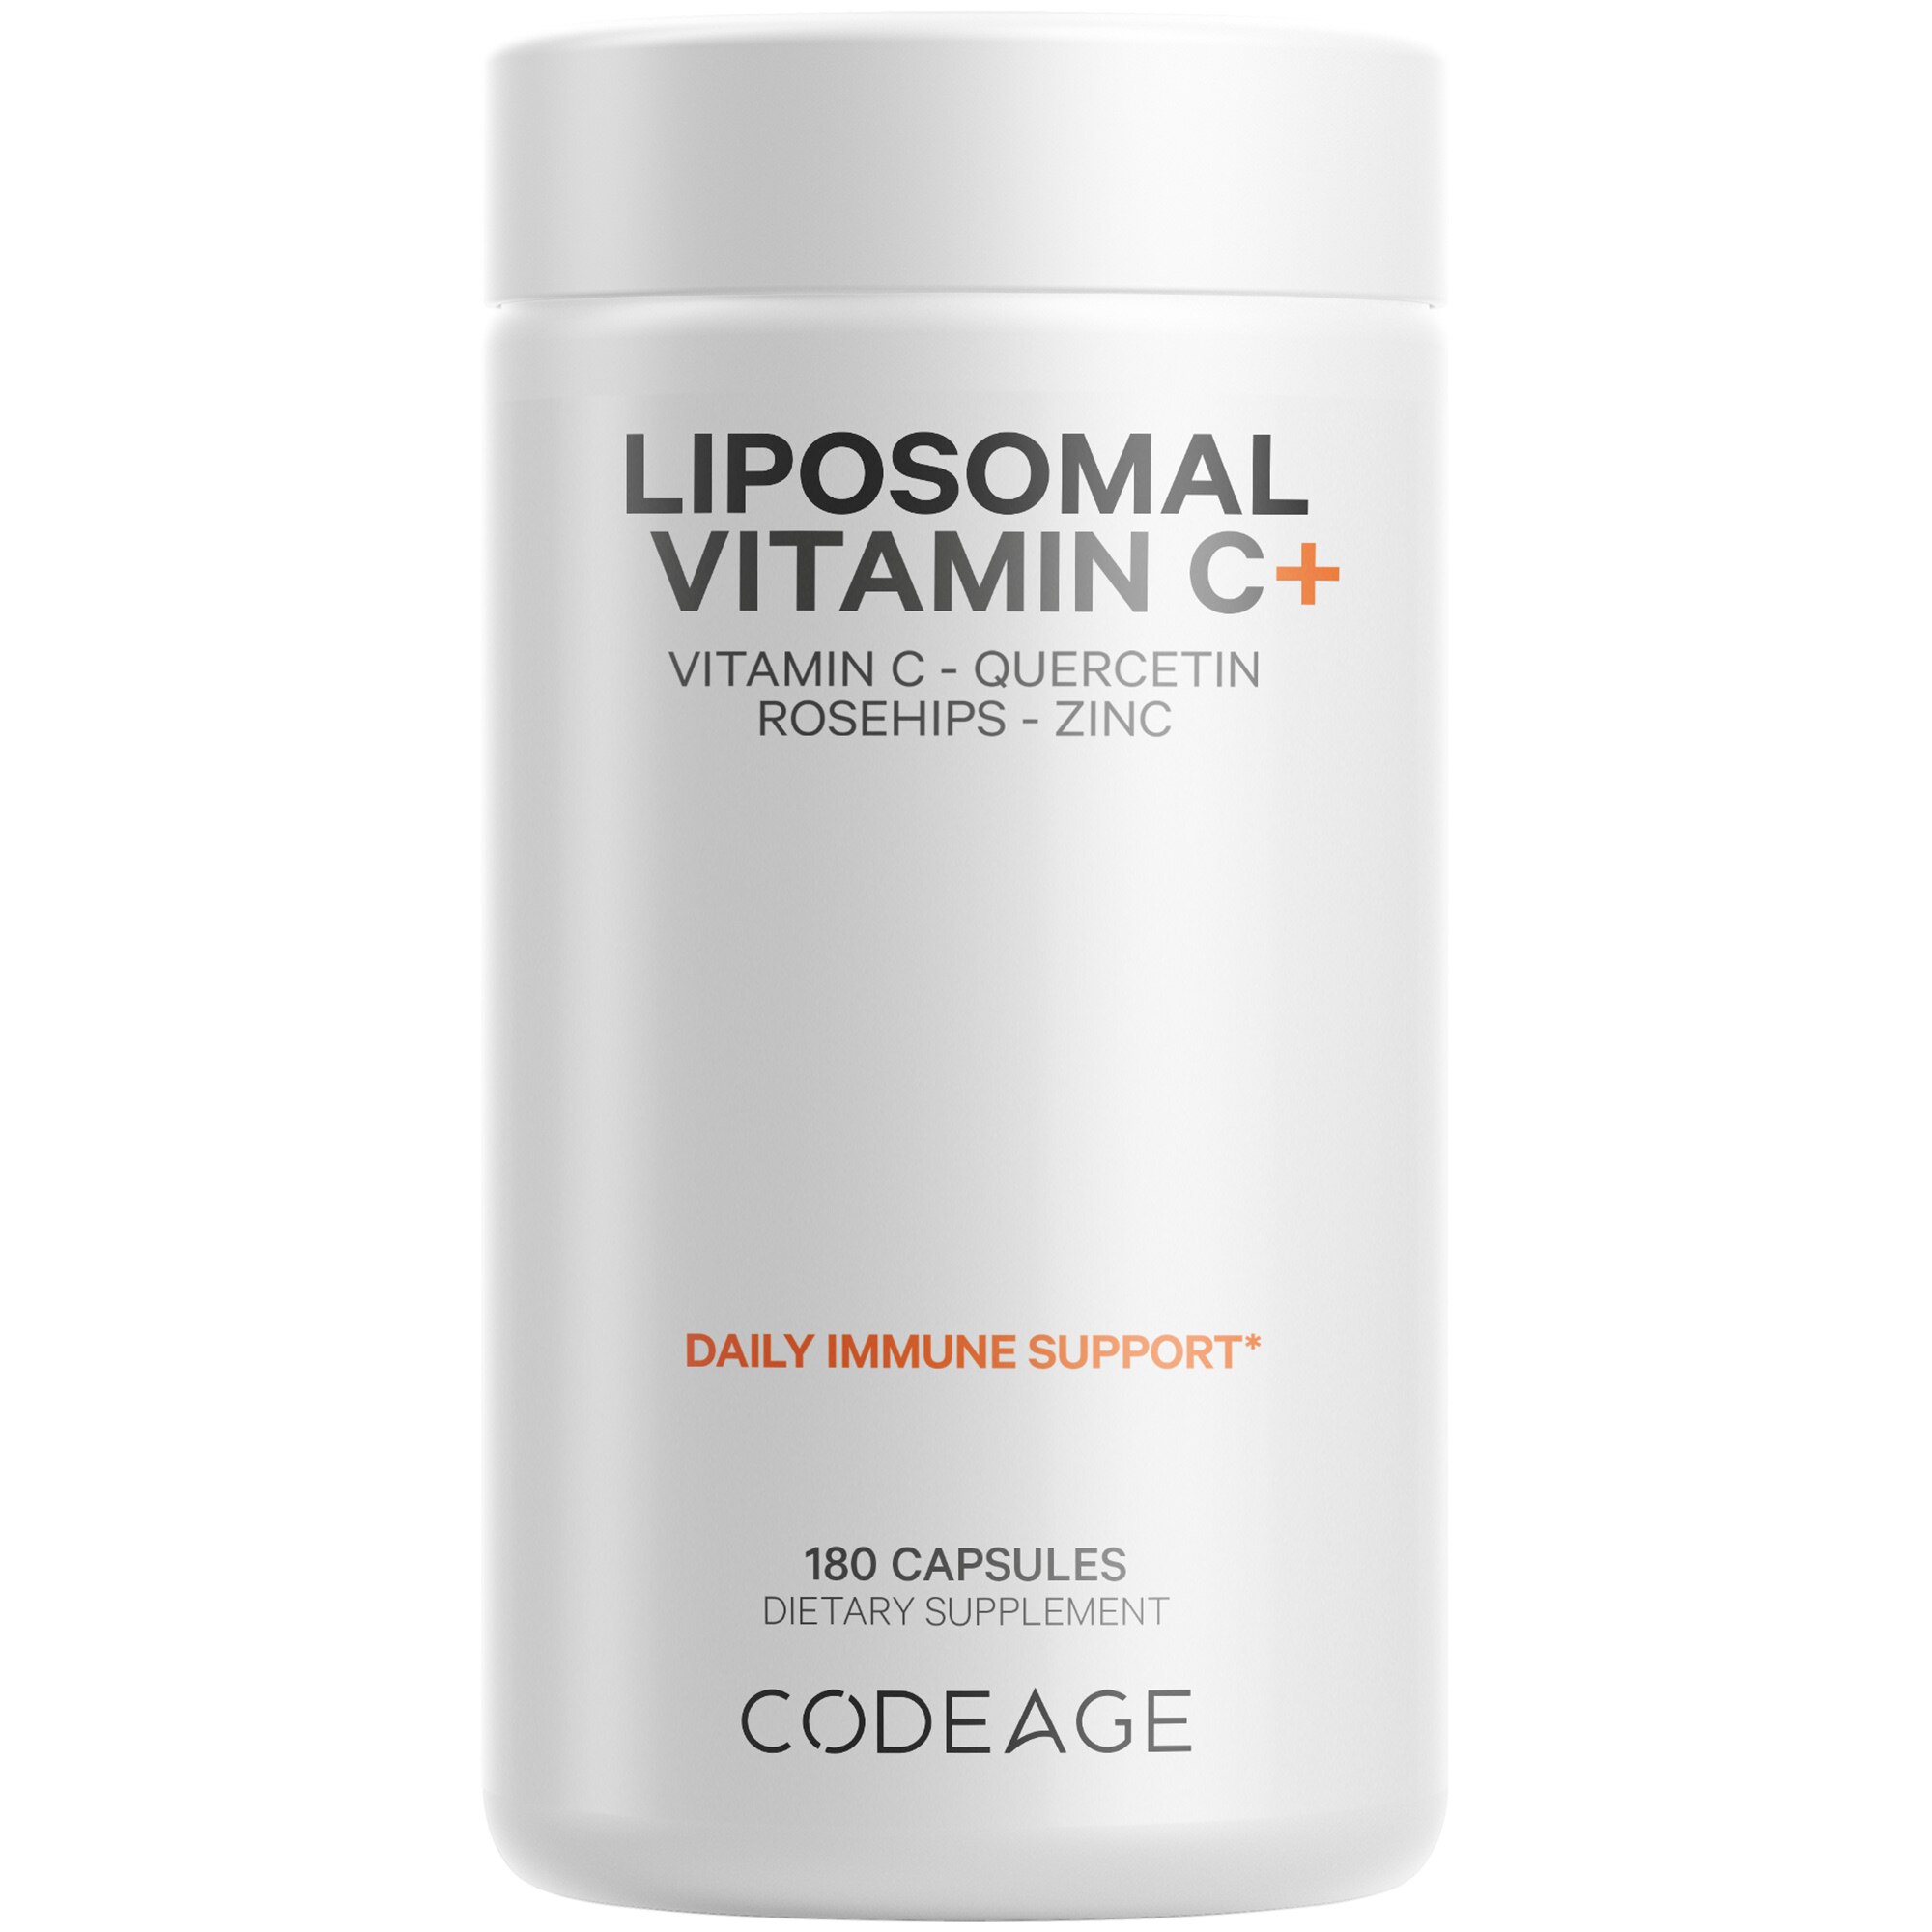 Codeage Liposomal Vitamin C+ Supplement Capsules, 180 CT